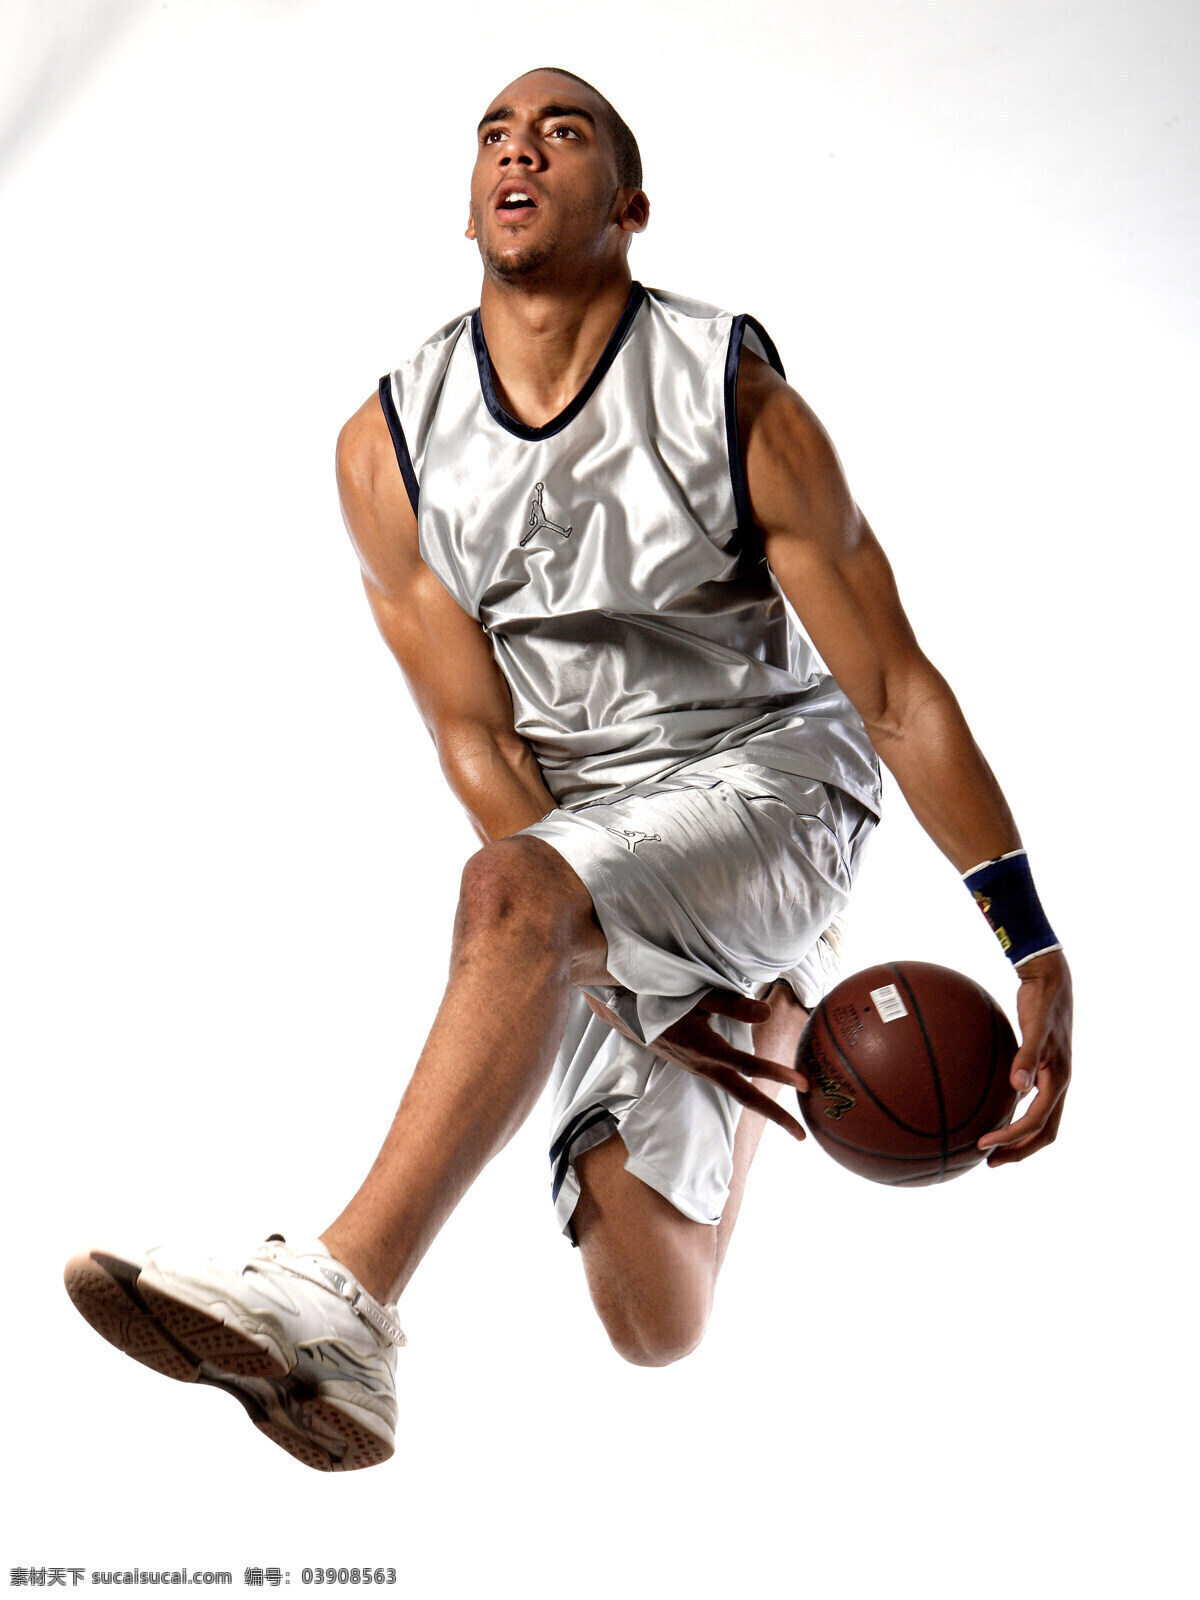 动感 黑人 活力 健康 篮球 男性男人 人物图库 运动 健壮 胯下运球 假动作 进攻 运动活力 psd源文件